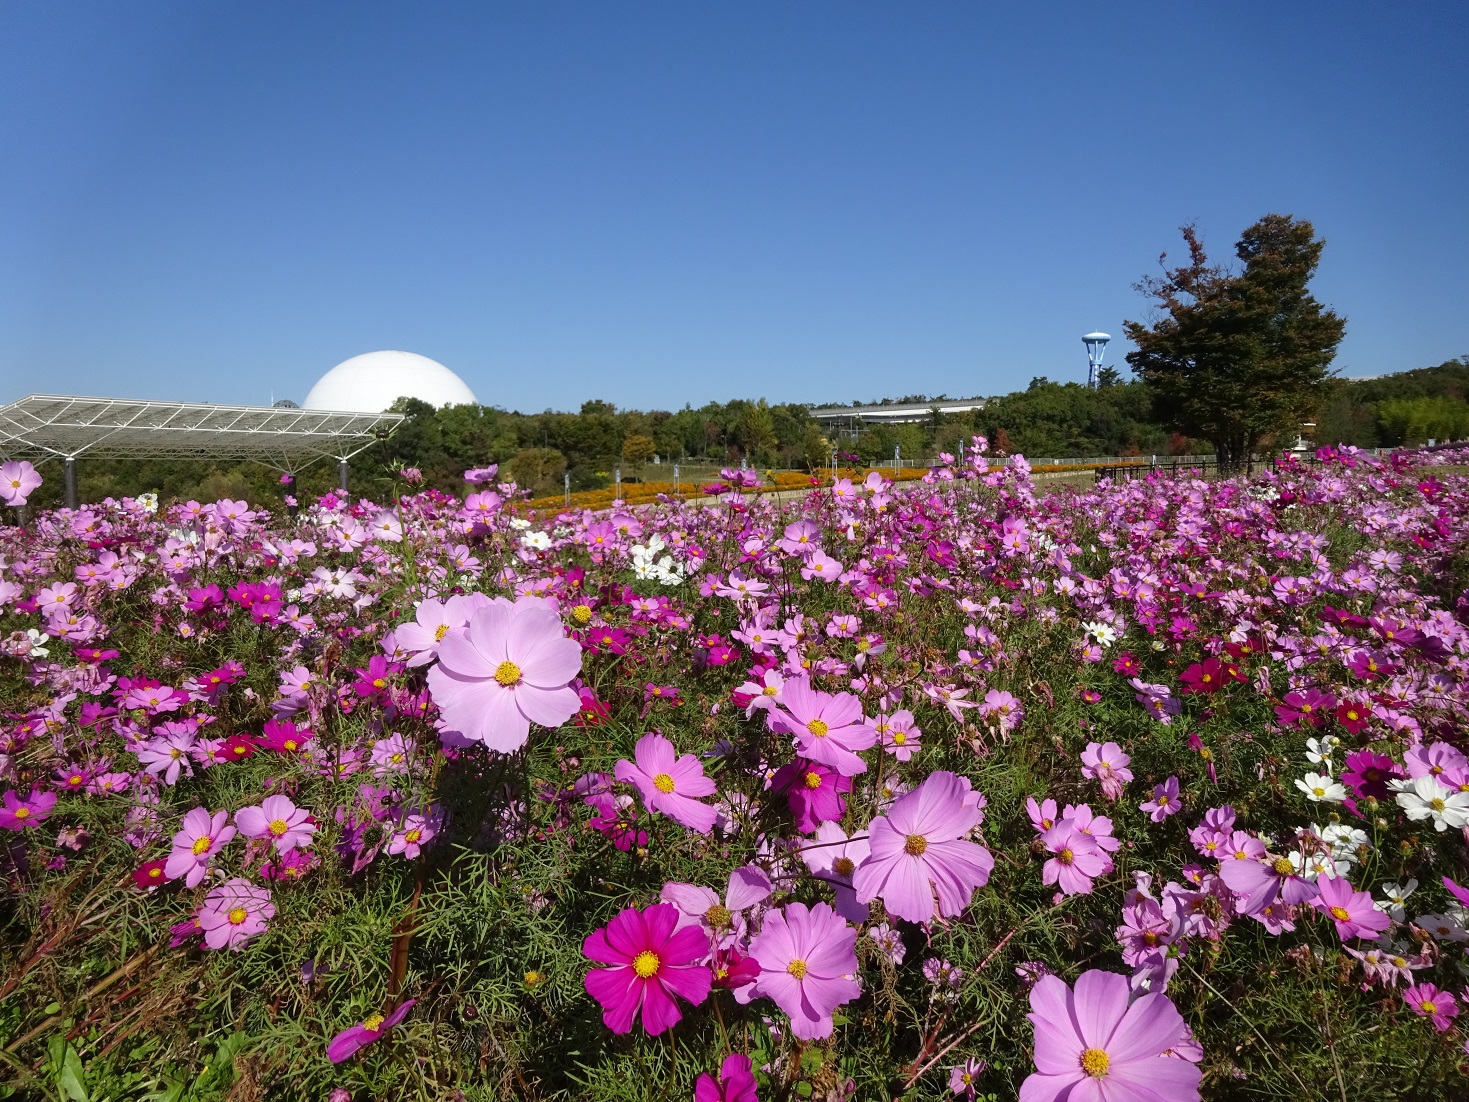 Hoa cosmos tuyệt đẹp tại Aichi Expo Memorial Park - 3 tiện ích